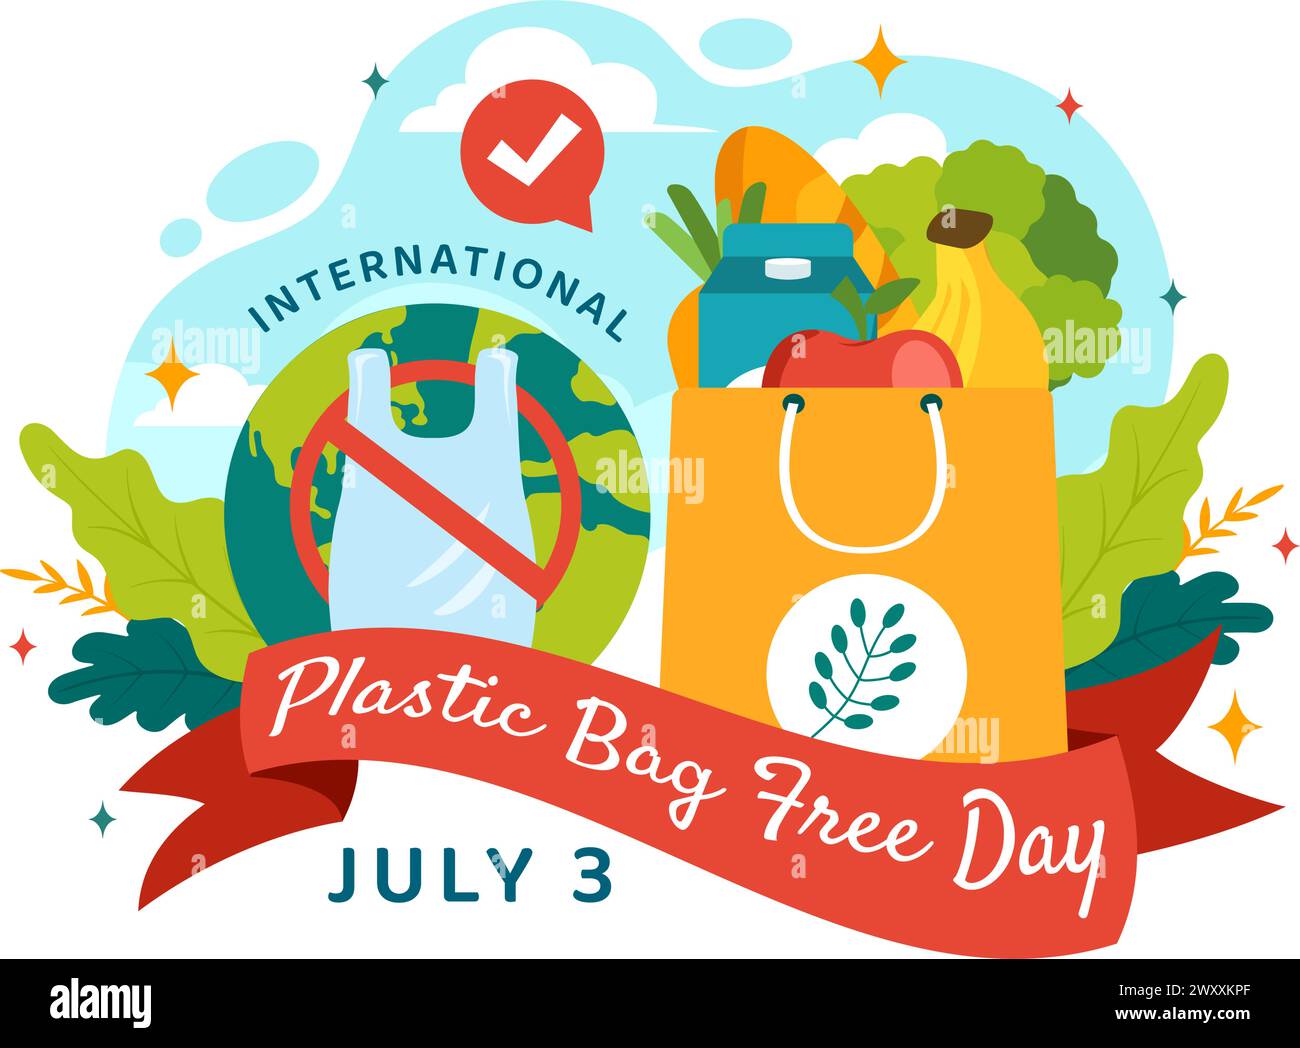 Internationale Plastiktüte Freie Tag Vektor-Illustration am 3. Juli mit Go Green, Save Earth und Ocean in Eco Lifestyle Flat Cartoon Hintergrund Stock Vektor